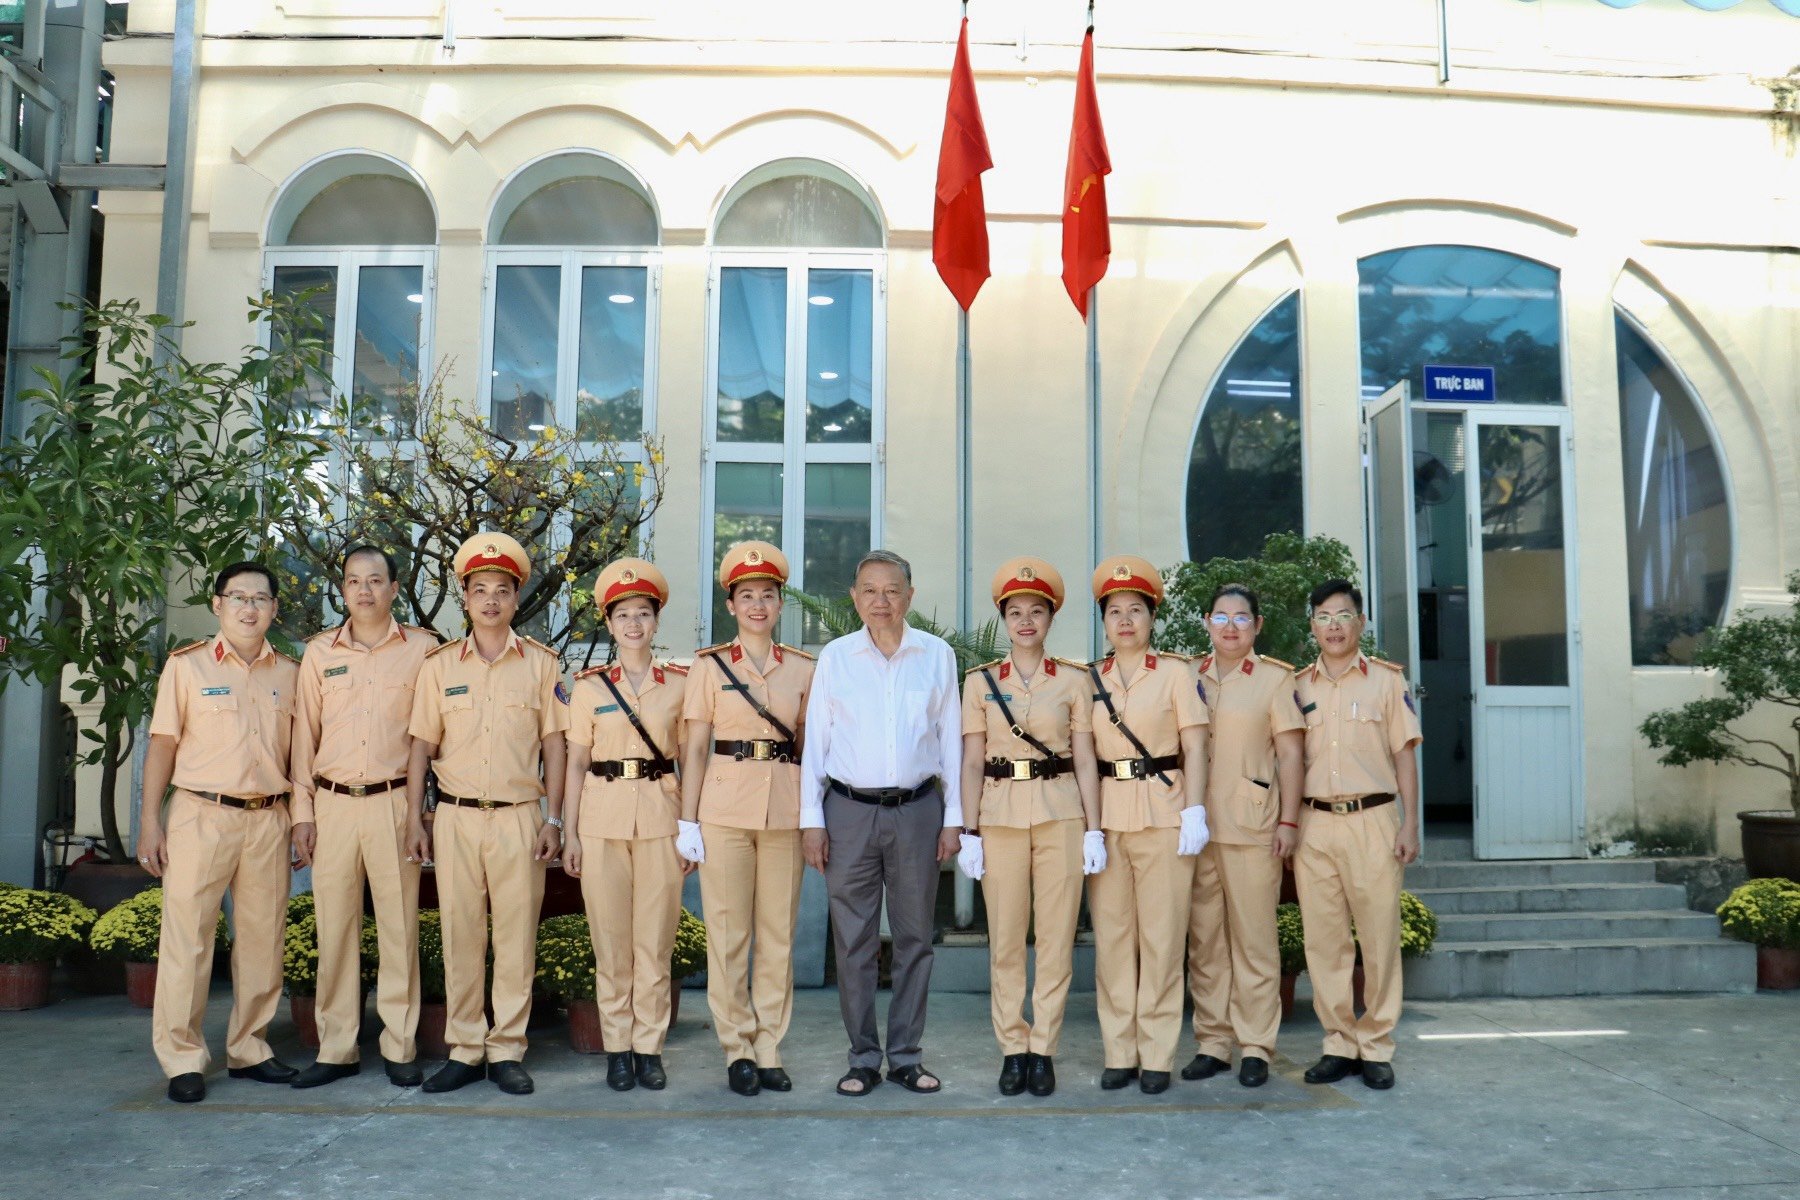 đồng chí Đại Tướng Tô Lâm – Ủy viên Bộ Chính trị - Bộ trưởng Bộ Công an chụp hình lưu niệm cùng với cán bộ chiến sỹ tham gia công tác đưa dẫn đoàn của Phòng CSGT